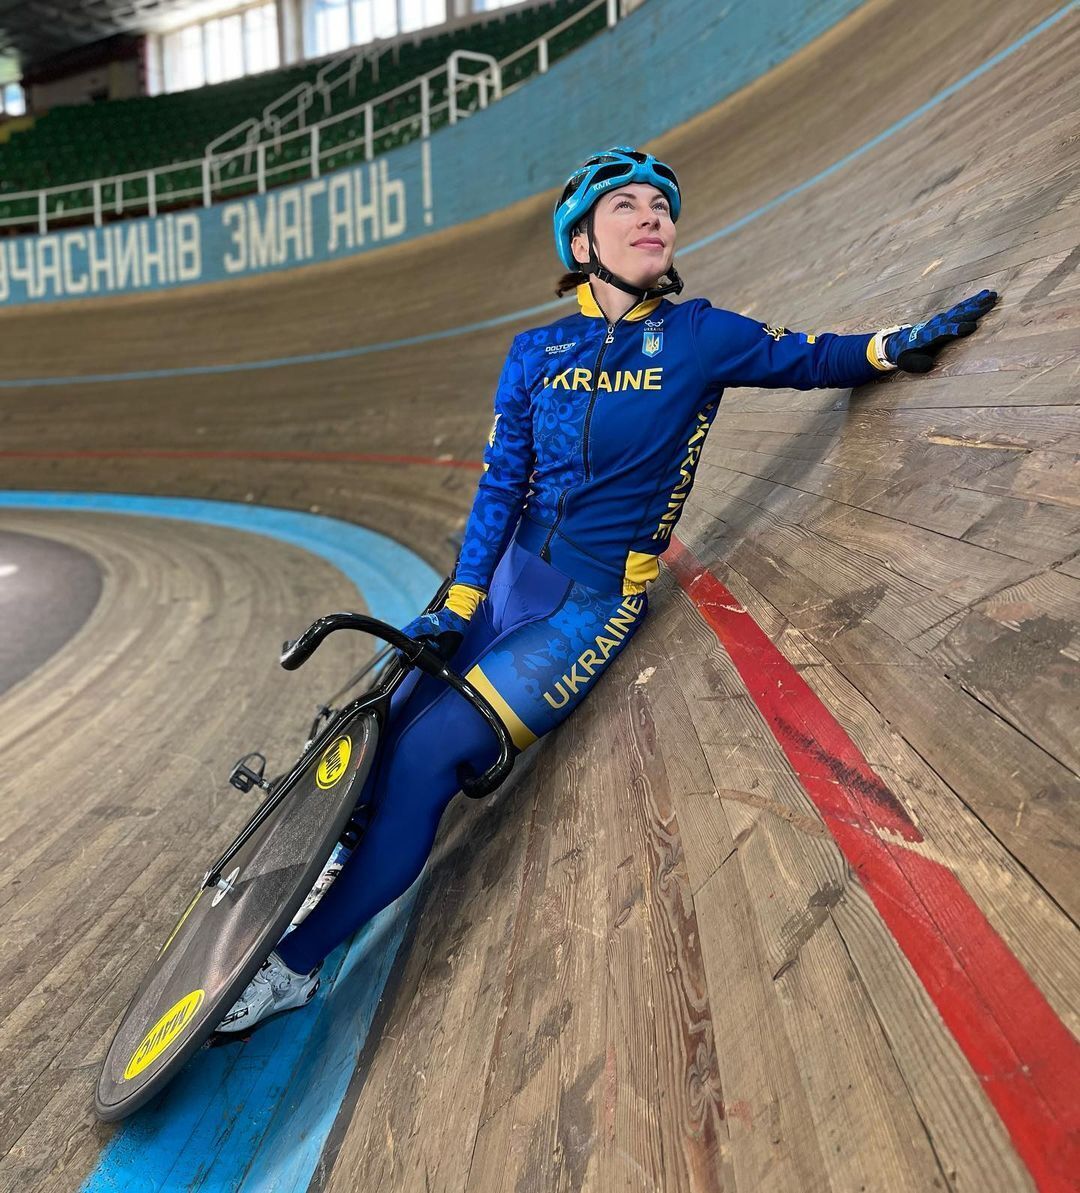 Ukraińska sensacja Igrzysk Olimpijskich 2020 zakończyła karierę w wieku 27 lat